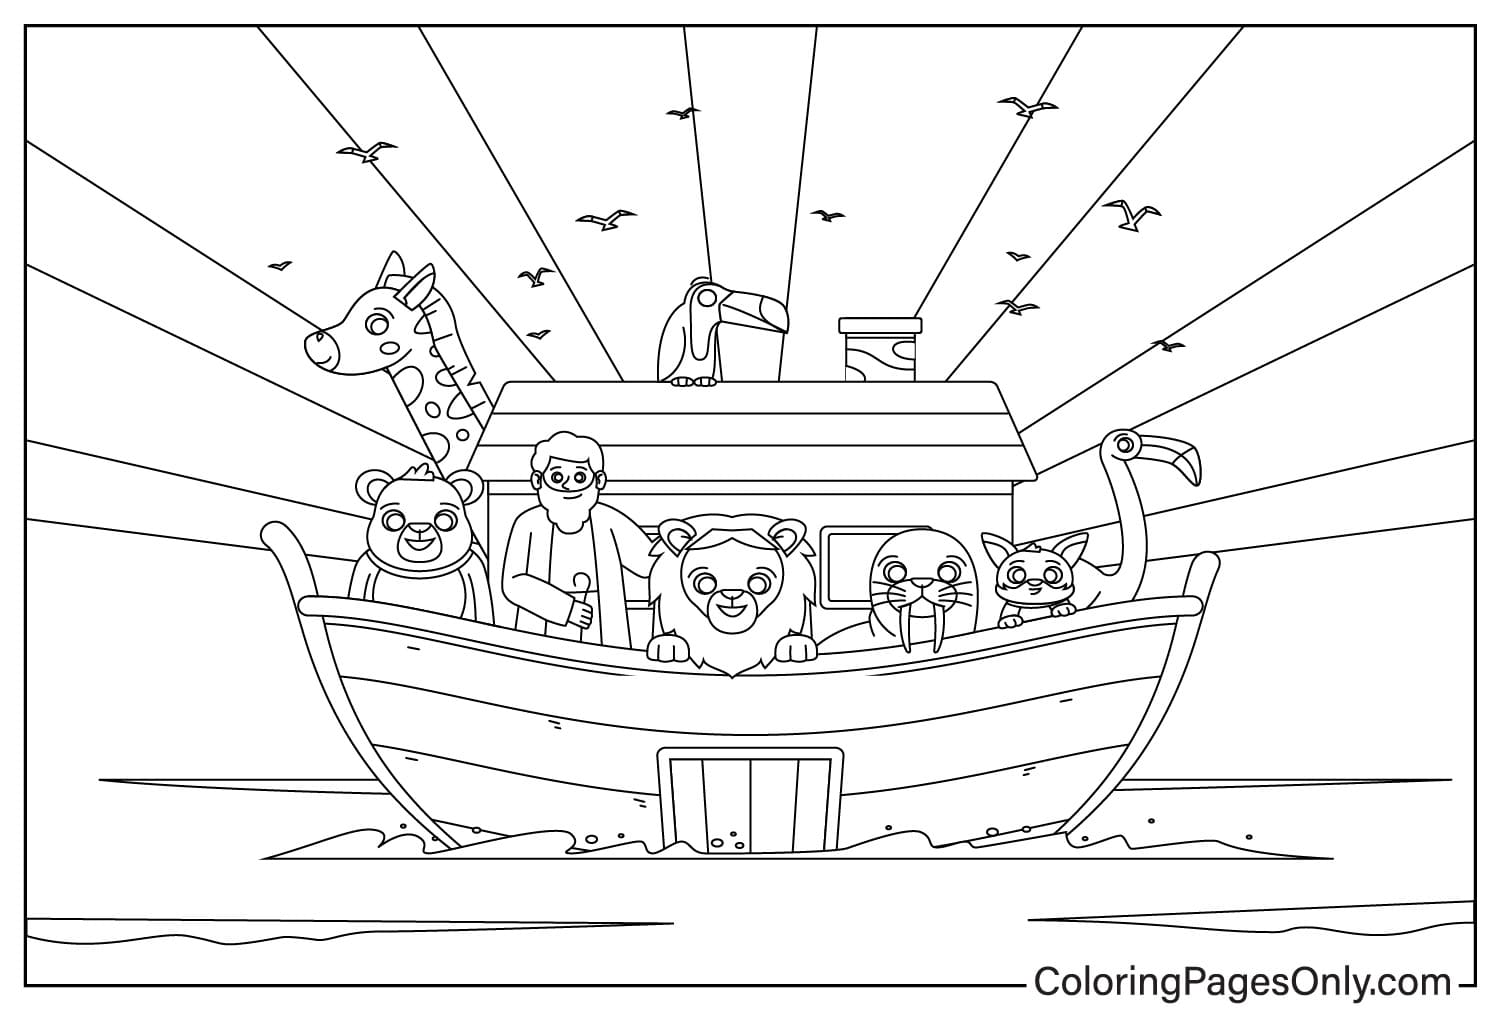 نوح والحيوانات على السفينة أثناء الطوفان من سفينة نوح